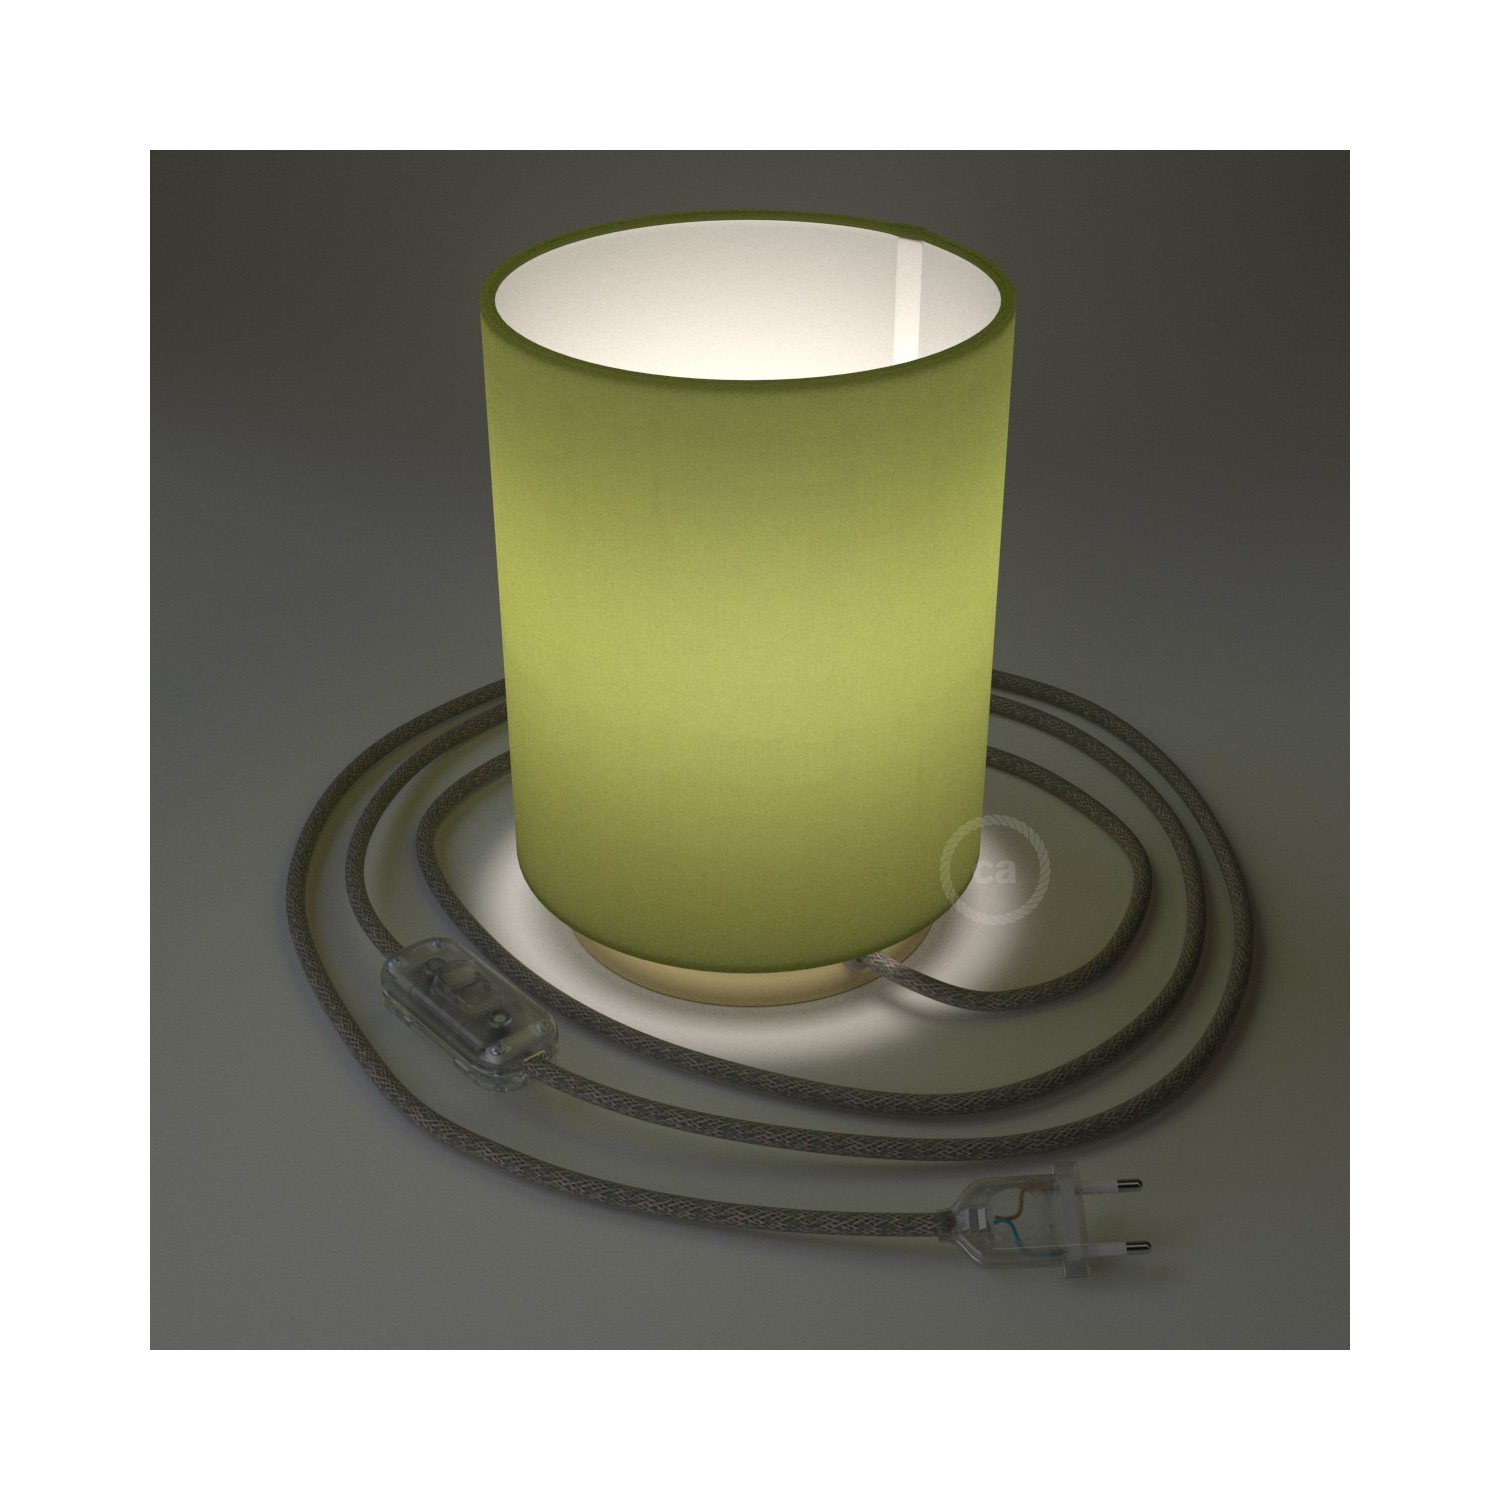 Posaluce i metall med Cilindro Olivgrön Canvas lampskärm, komplett med textilkabel, sladdströmbrytare och 2-polig stickpropp.